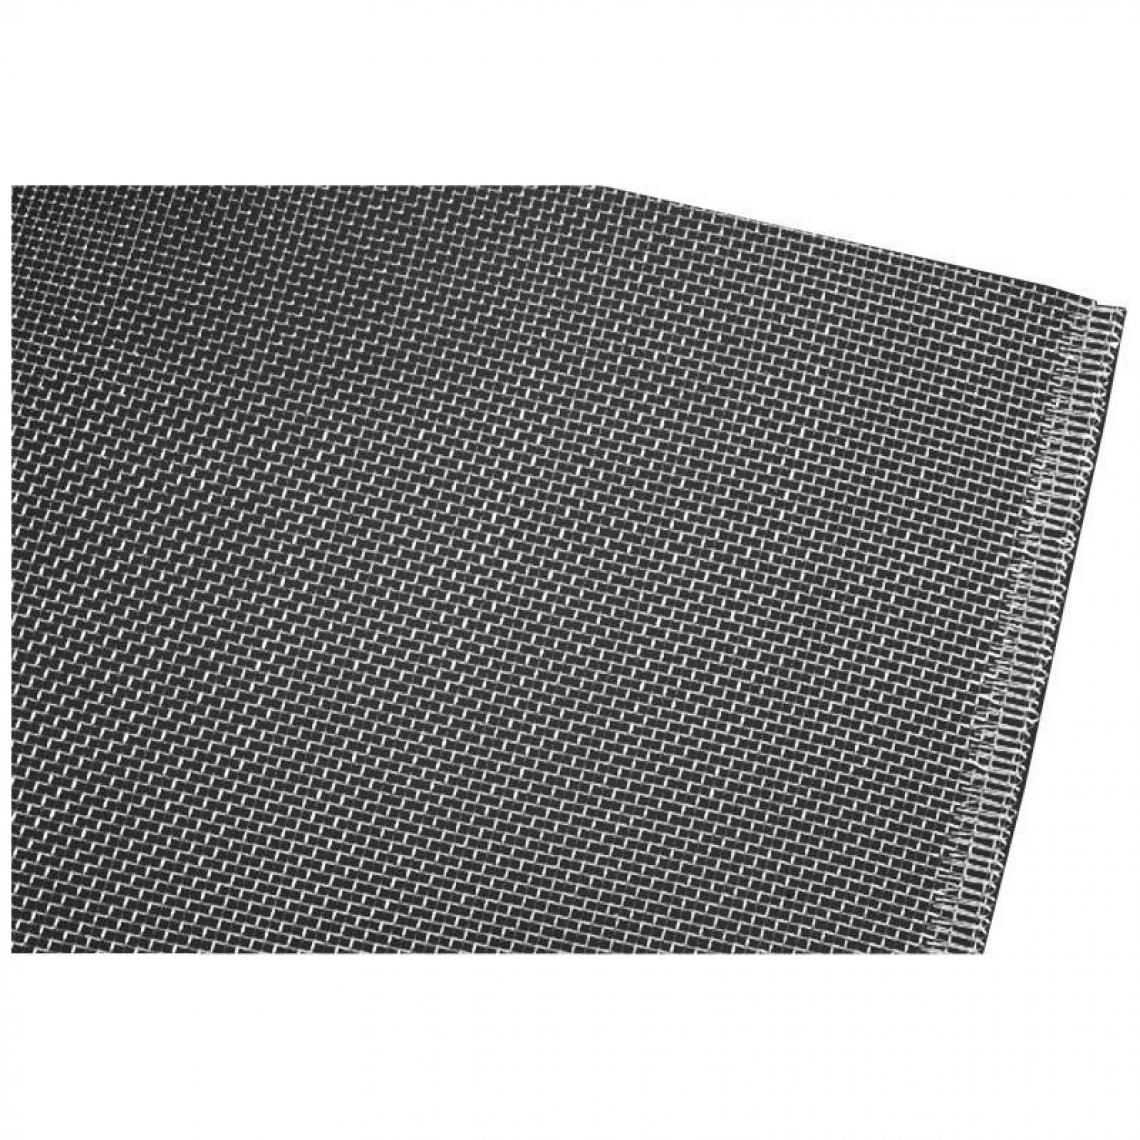 marque generique - Rouleau tissu 1,00x25m acier inoxidable inoxydable - Clôture grillagée